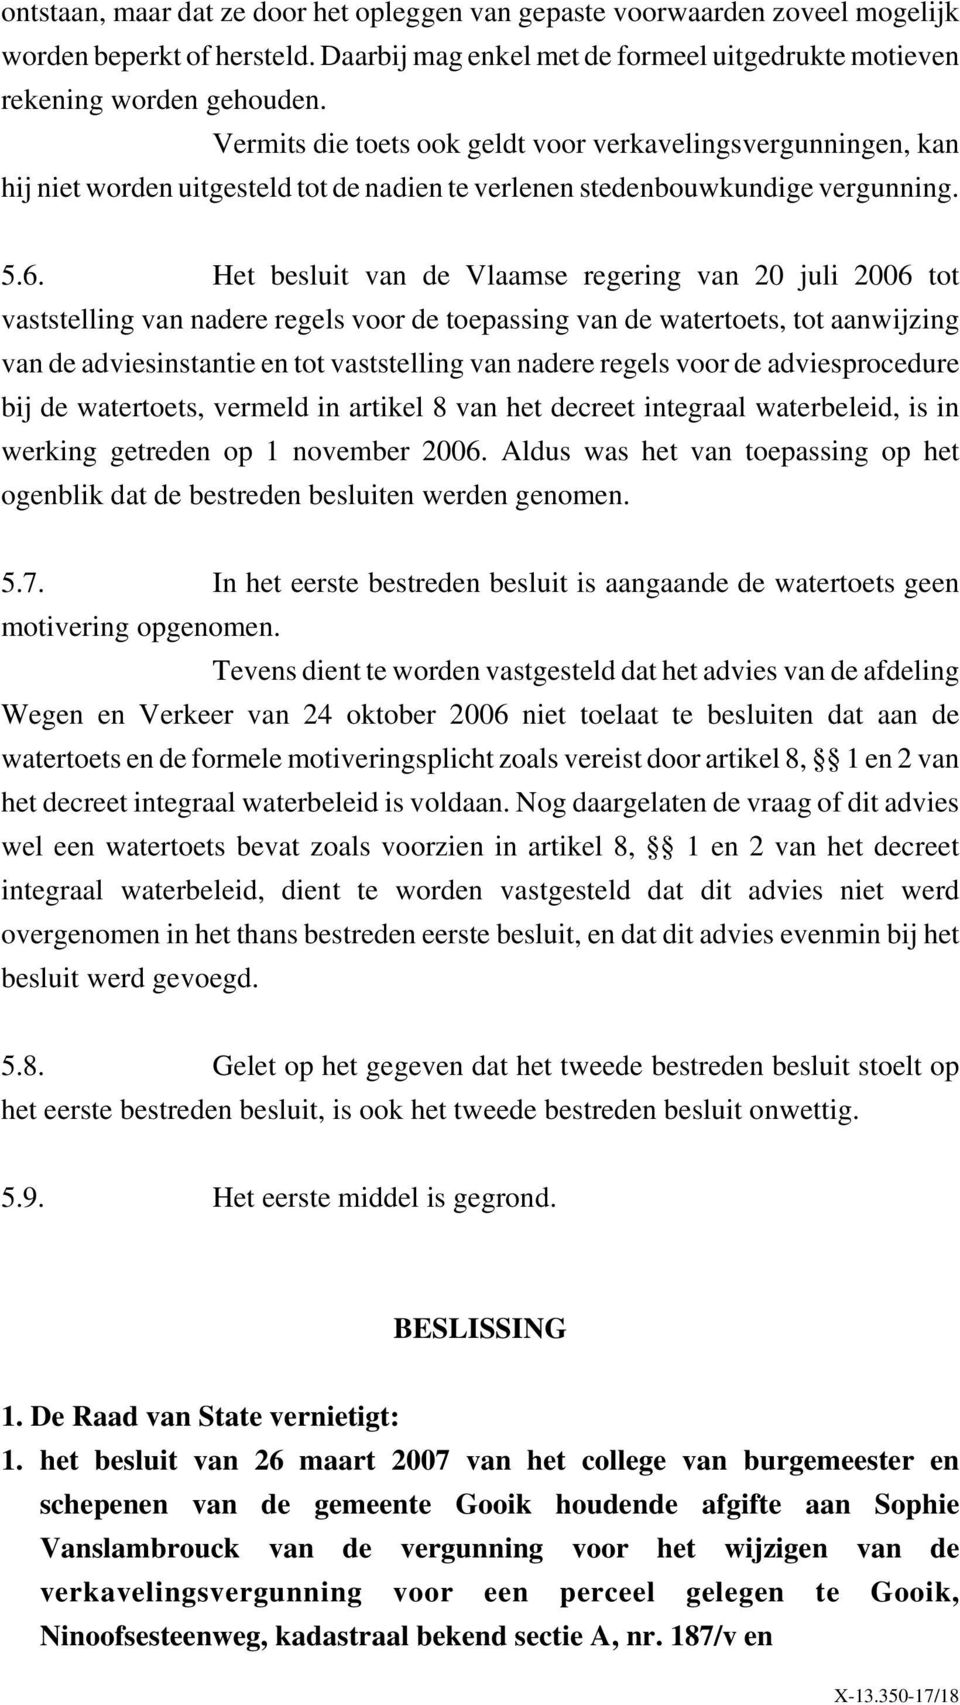 Het besluit van de Vlaamse regering van 20 juli 2006 tot vaststelling van nadere regels voor de toepassing van de watertoets, tot aanwijzing van de adviesinstantie en tot vaststelling van nadere